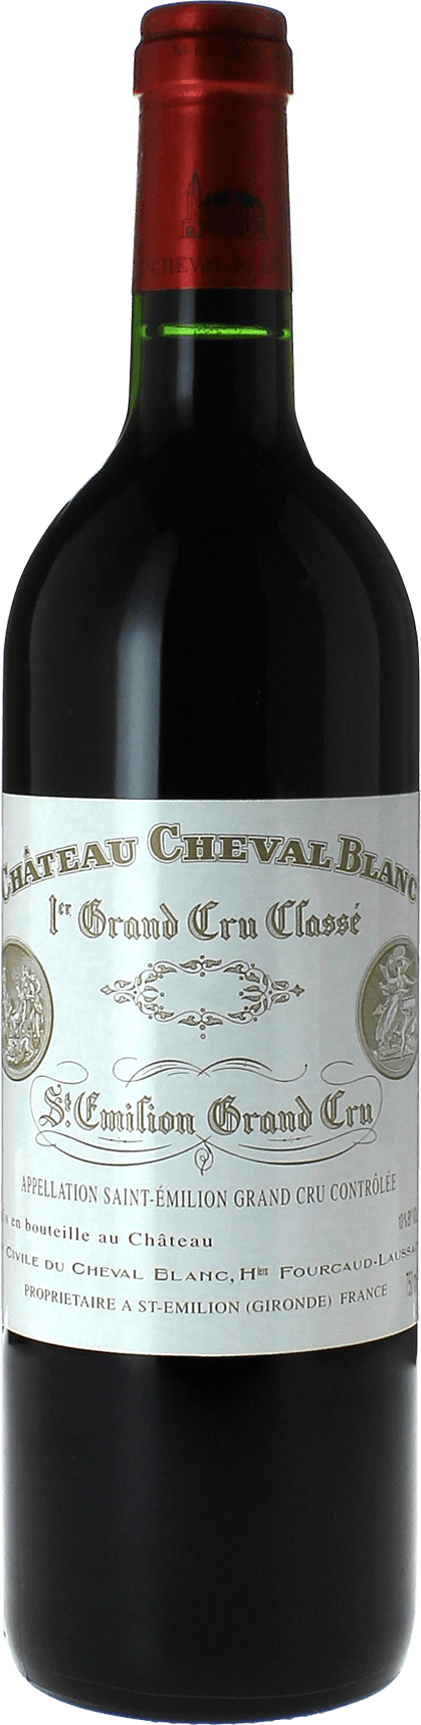 Cheval blanc 2019 1er Grand cru class A Saint-Emilion, Bordeaux rouge